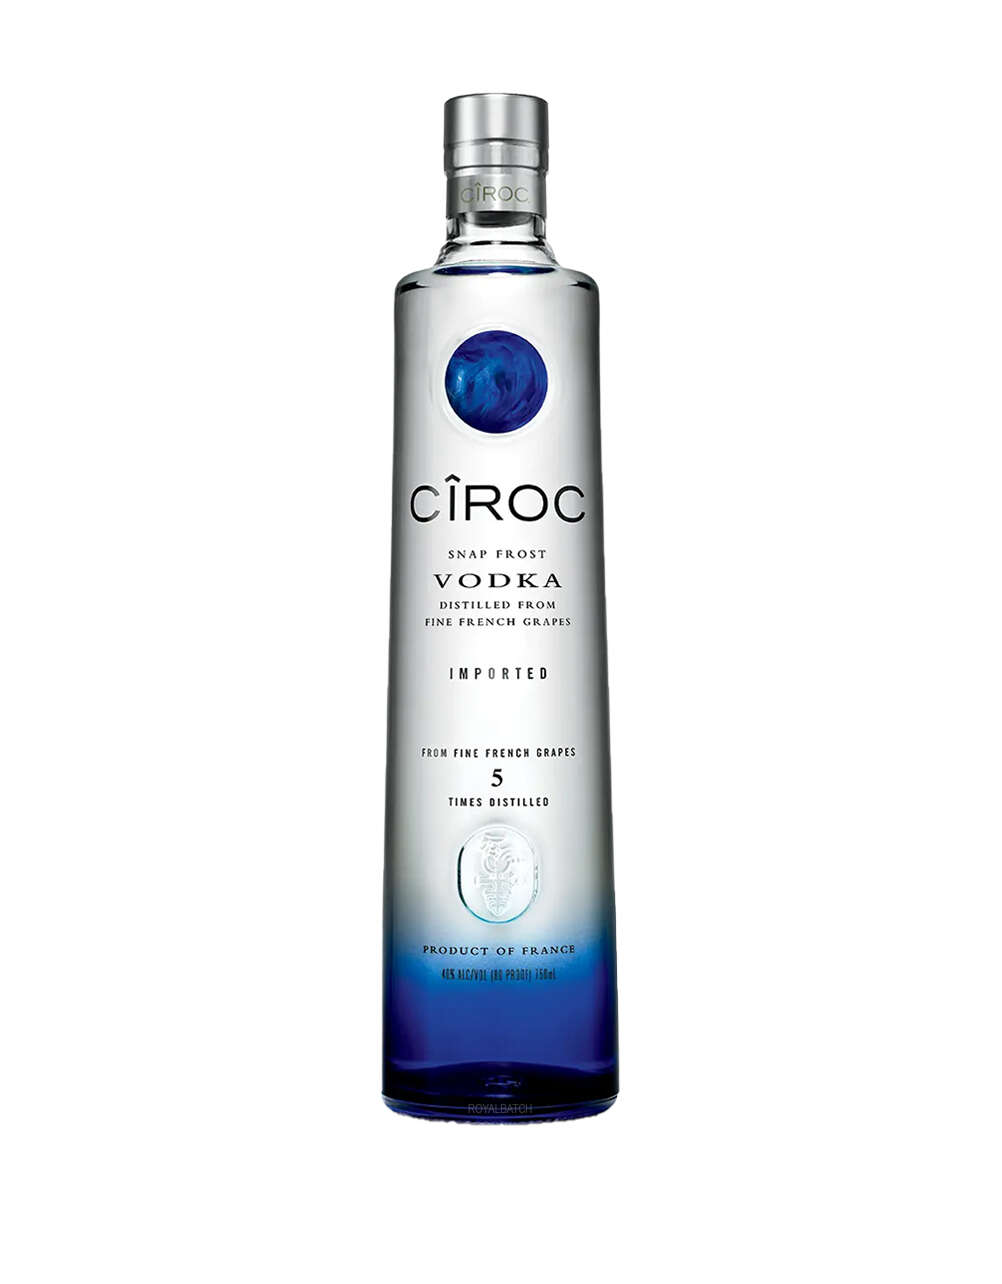 Ciroc Vodka 375ml